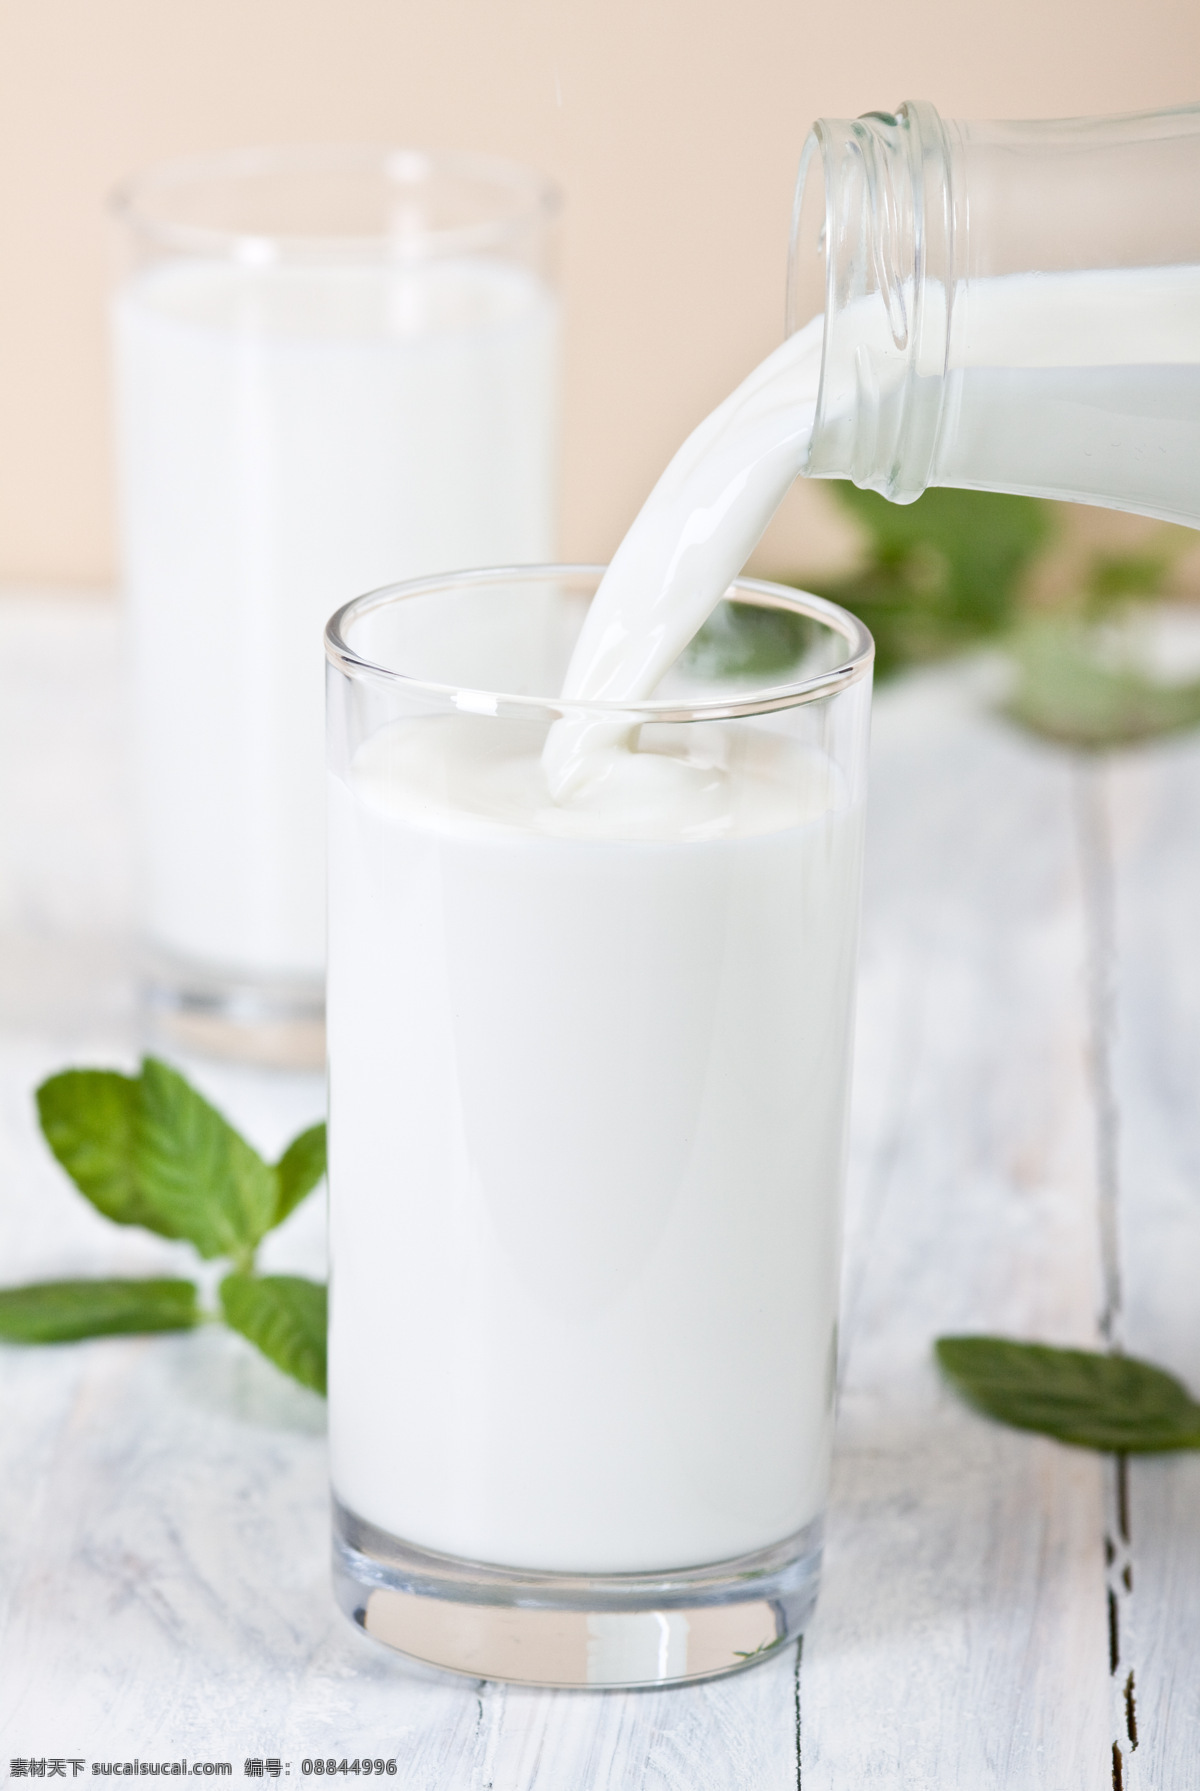 新鲜 牛奶 倒牛奶 玻璃杯子 鲜奶 新鲜牛奶 营养 美味 酒类图片 餐饮美食